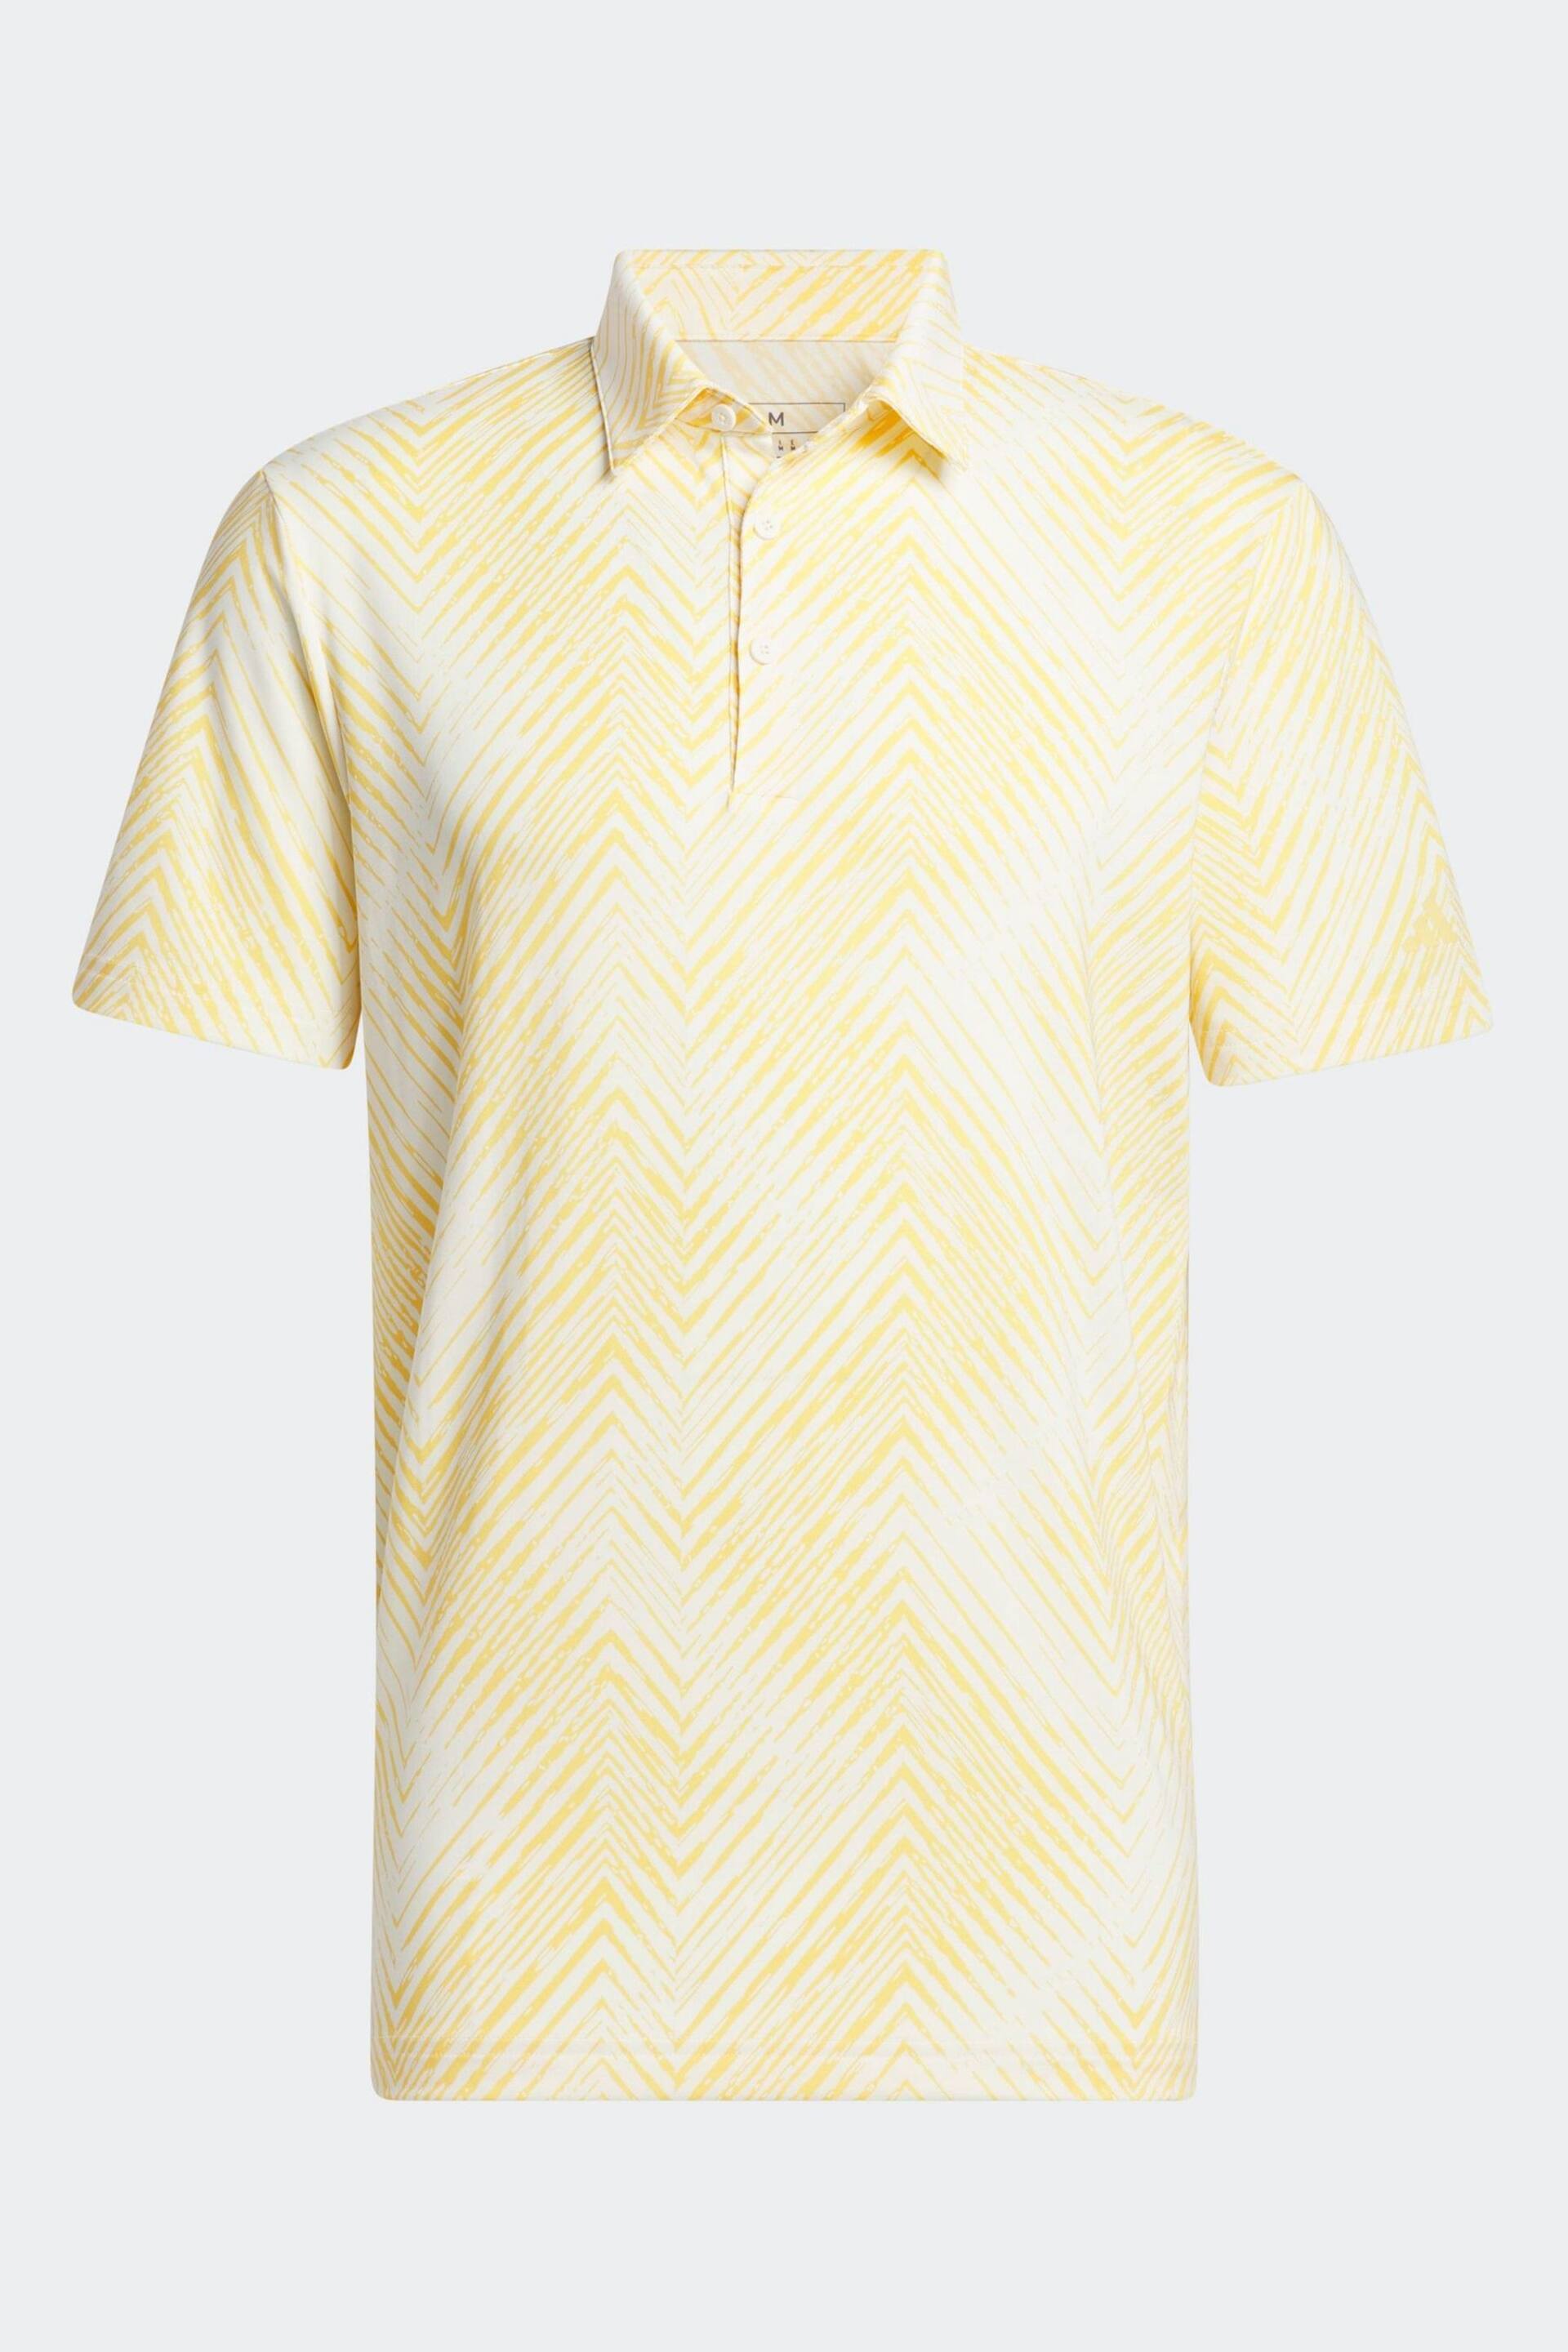 adidas Golf Ultimate 365 All Over Print Polo Shirt - Image 9 of 9